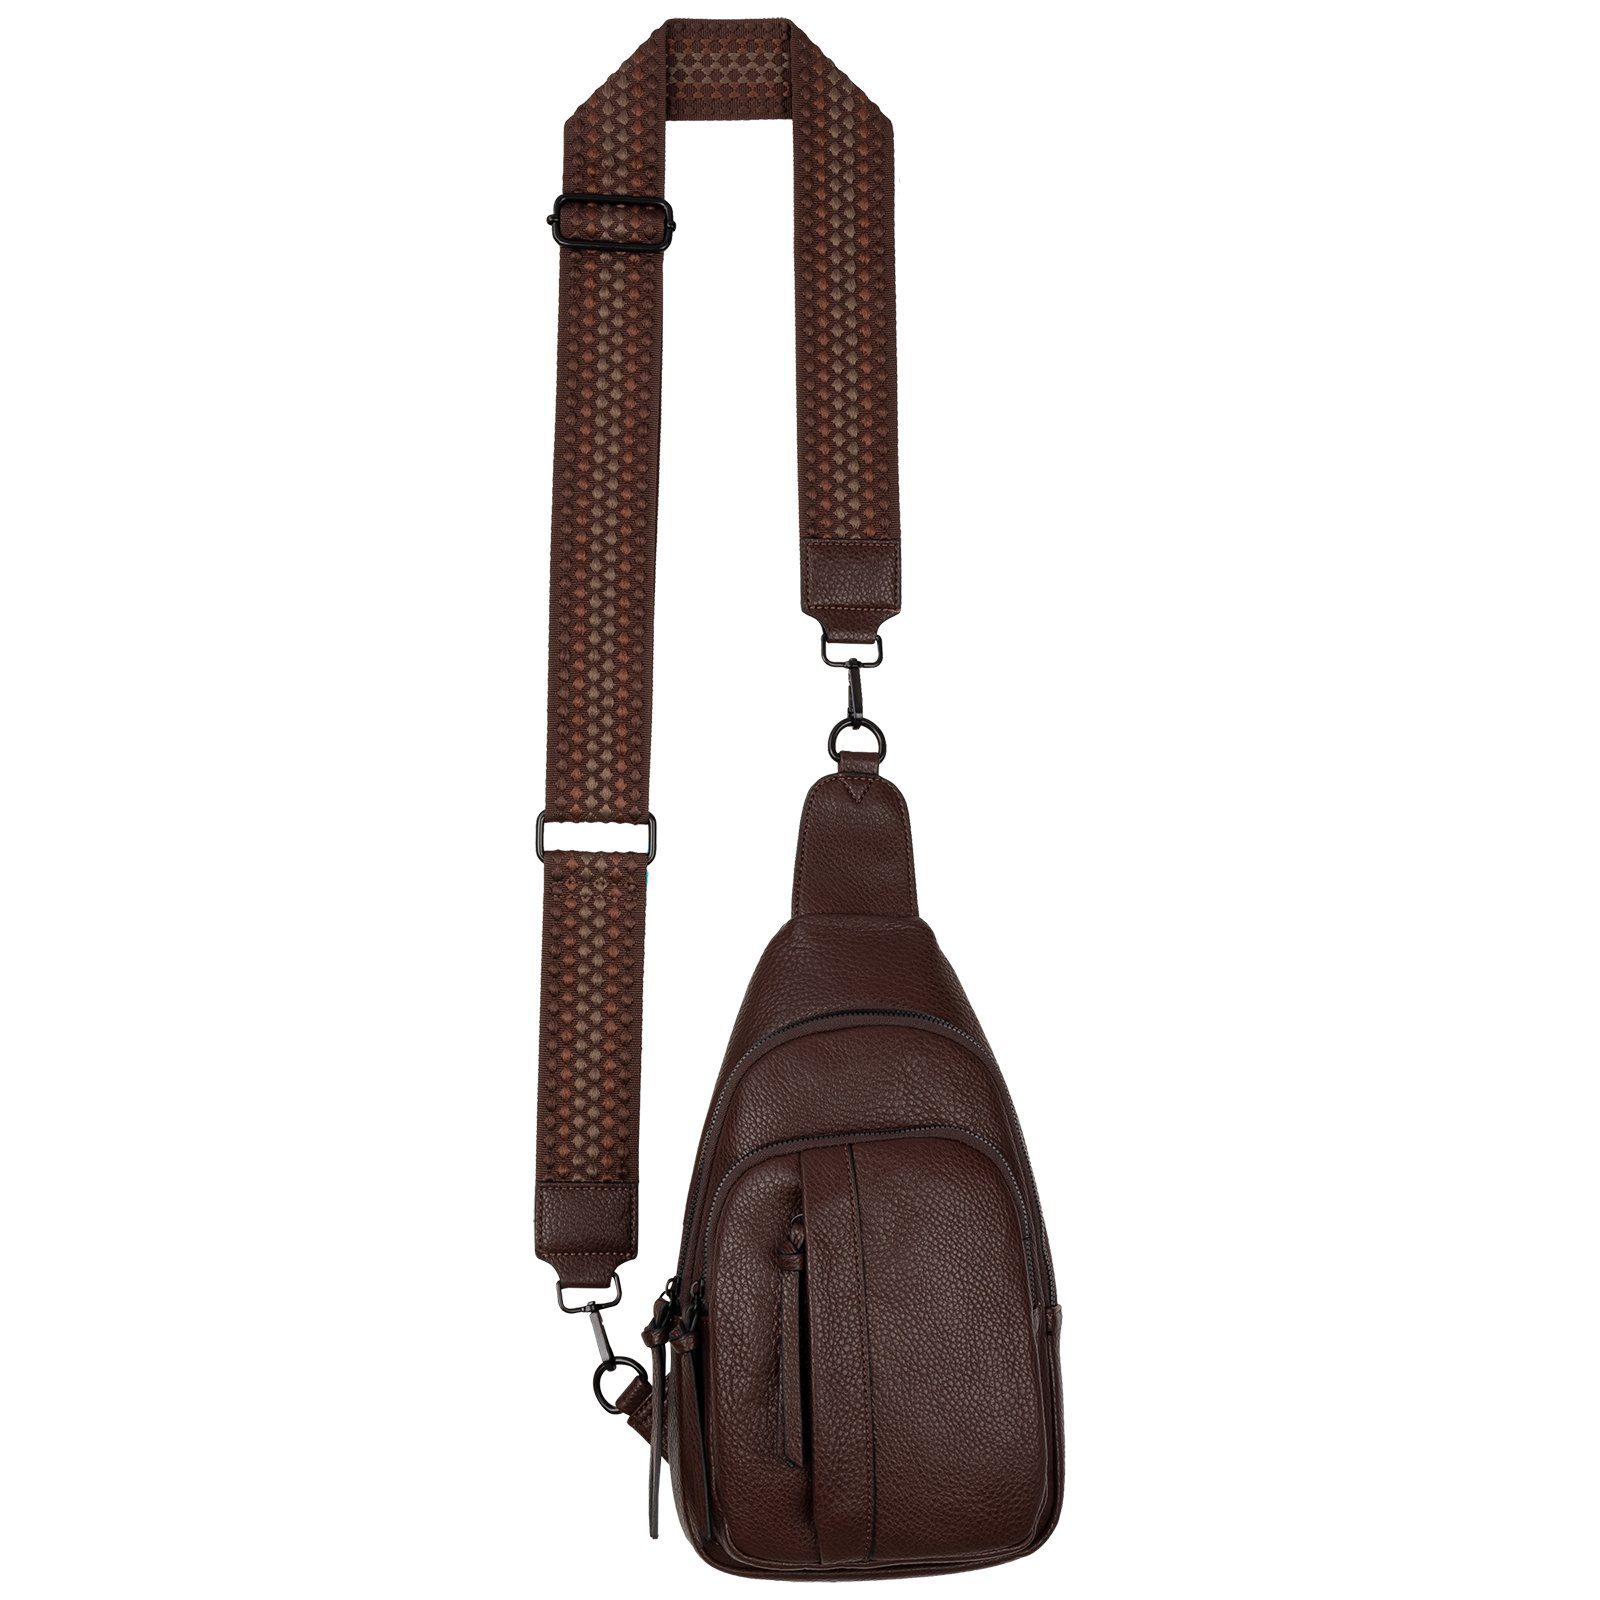 Body Cross EAAKIE Bag tragbar Brusttasche Umhängetasche CHOCOLATE Schultertasche, als Umhängetasche Schultertasche Umhängetasche Kunstleder, CrossOver,